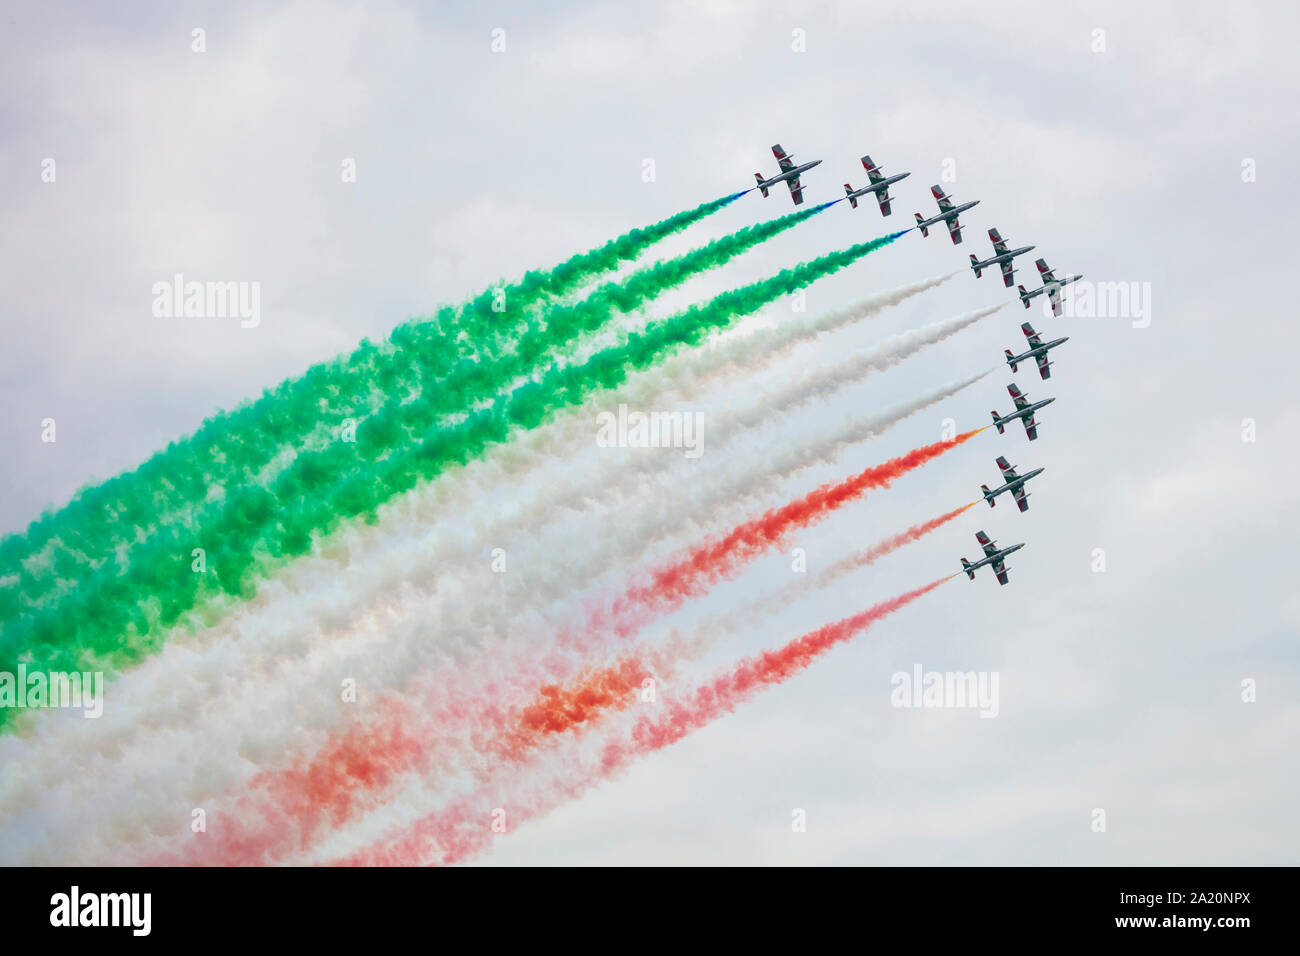 Varenna, Italien - September 29, 2019: Das Team Der kunstflugstaffel "Dreifarbige Pfeile' der italienischen militärischen Luftfahrt führt über See Lecco während einer airsh Stockfoto